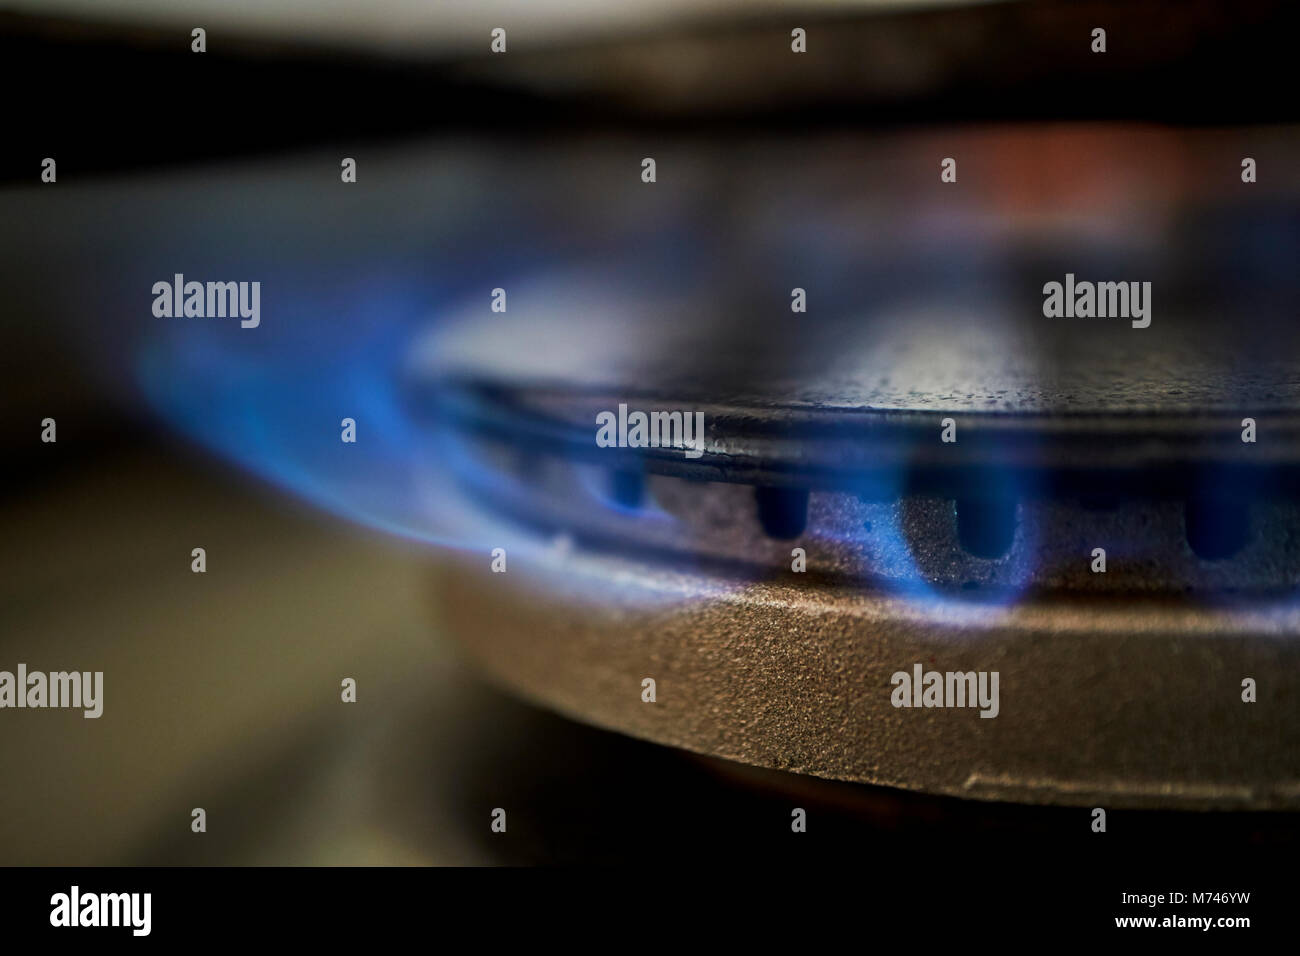 L'anneau de gaz de cuisson à l'aide de gravure sur la cuisine d'alimentation en gaz naturel au Royaume-Uni Banque D'Images